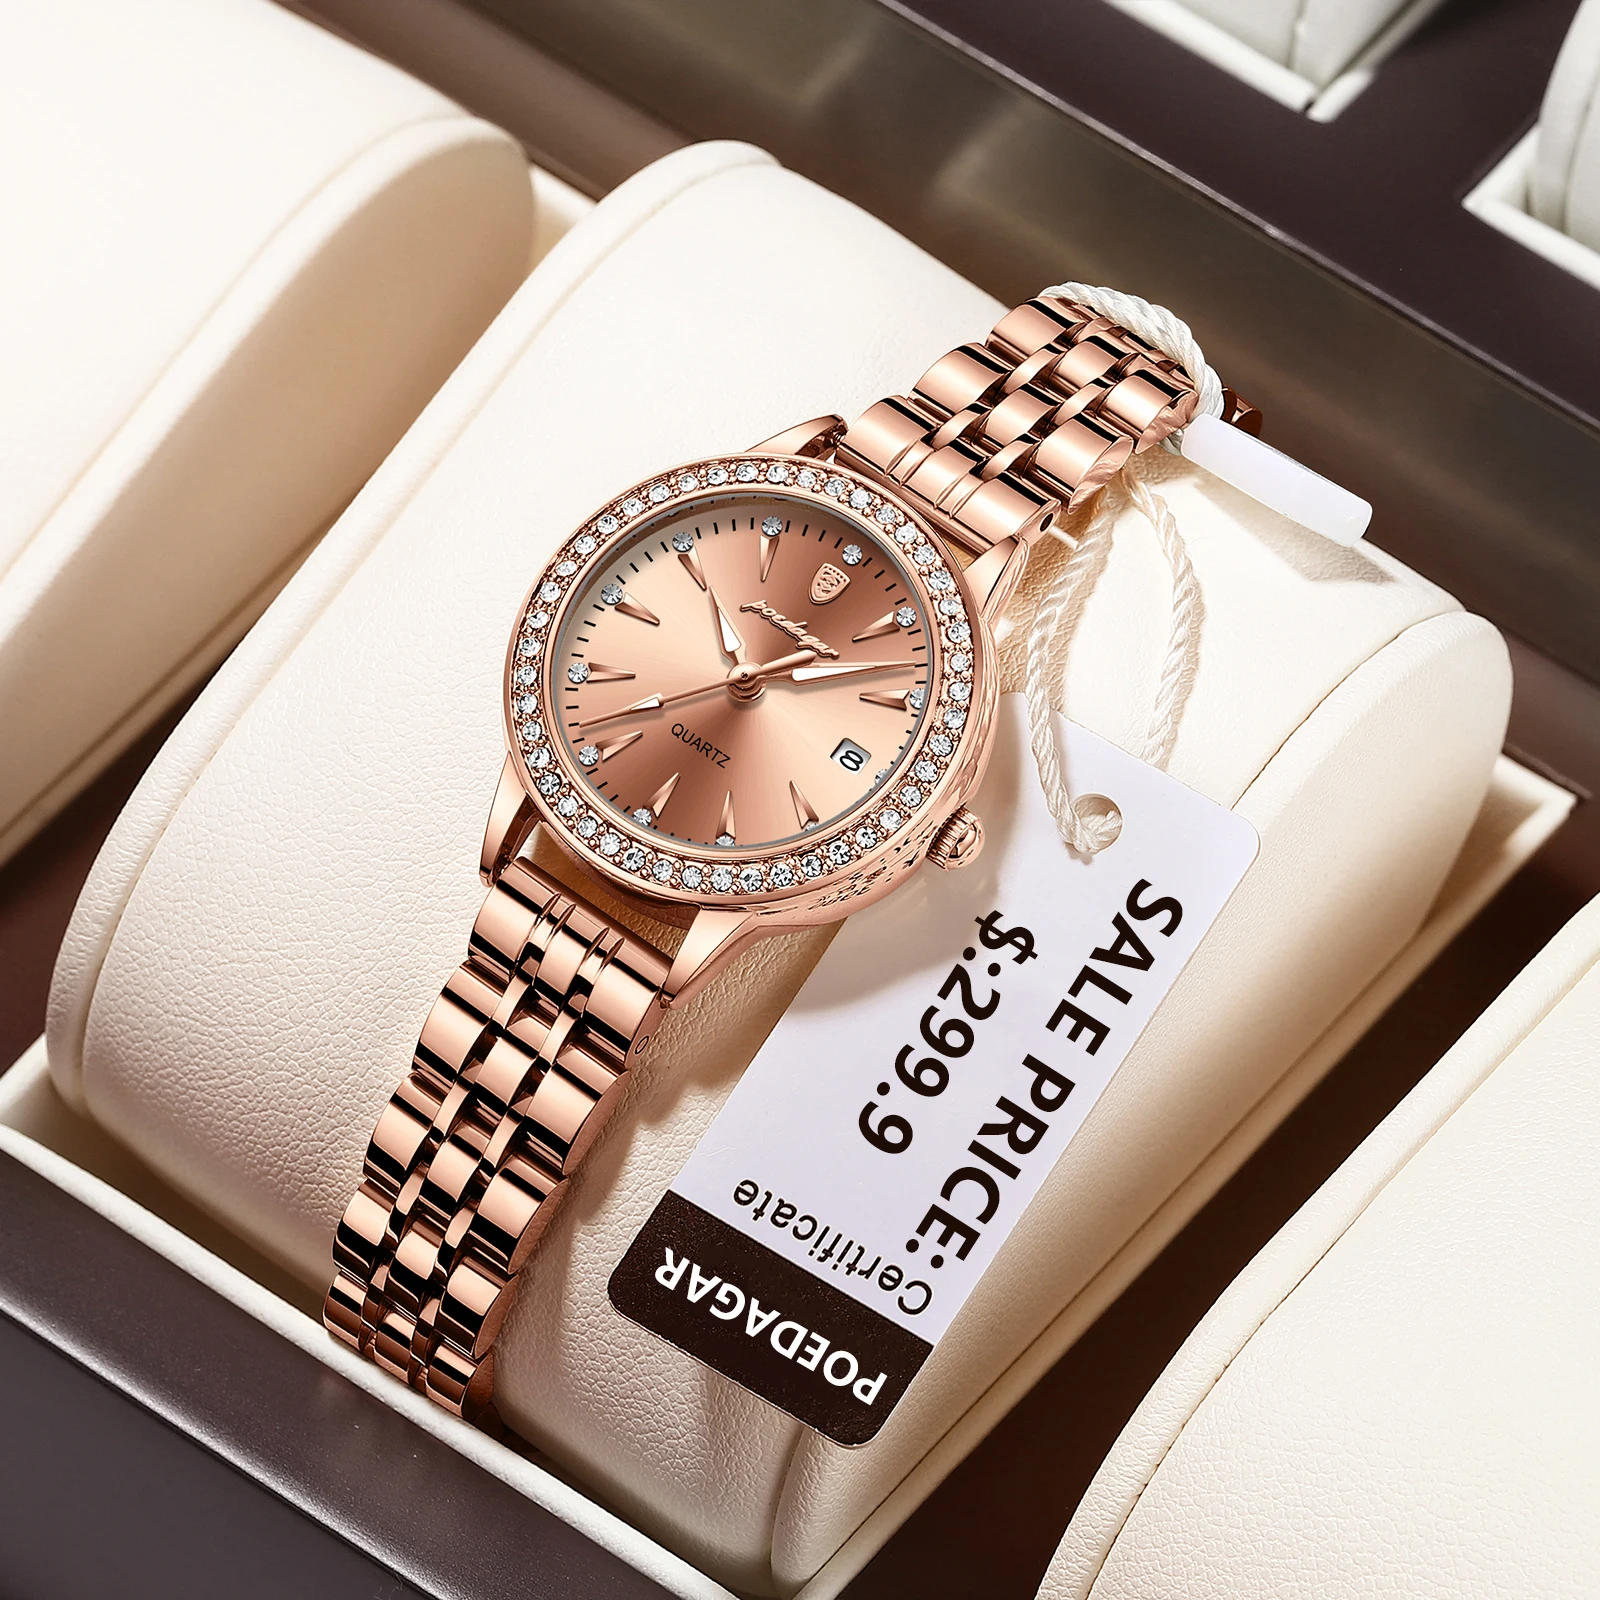 POEDAGAR-Reloj de lujo para mujer, pulsera de cuarzo resistente al agua con diamantes de oro rosa, fecha inoxidable, regalo para novia